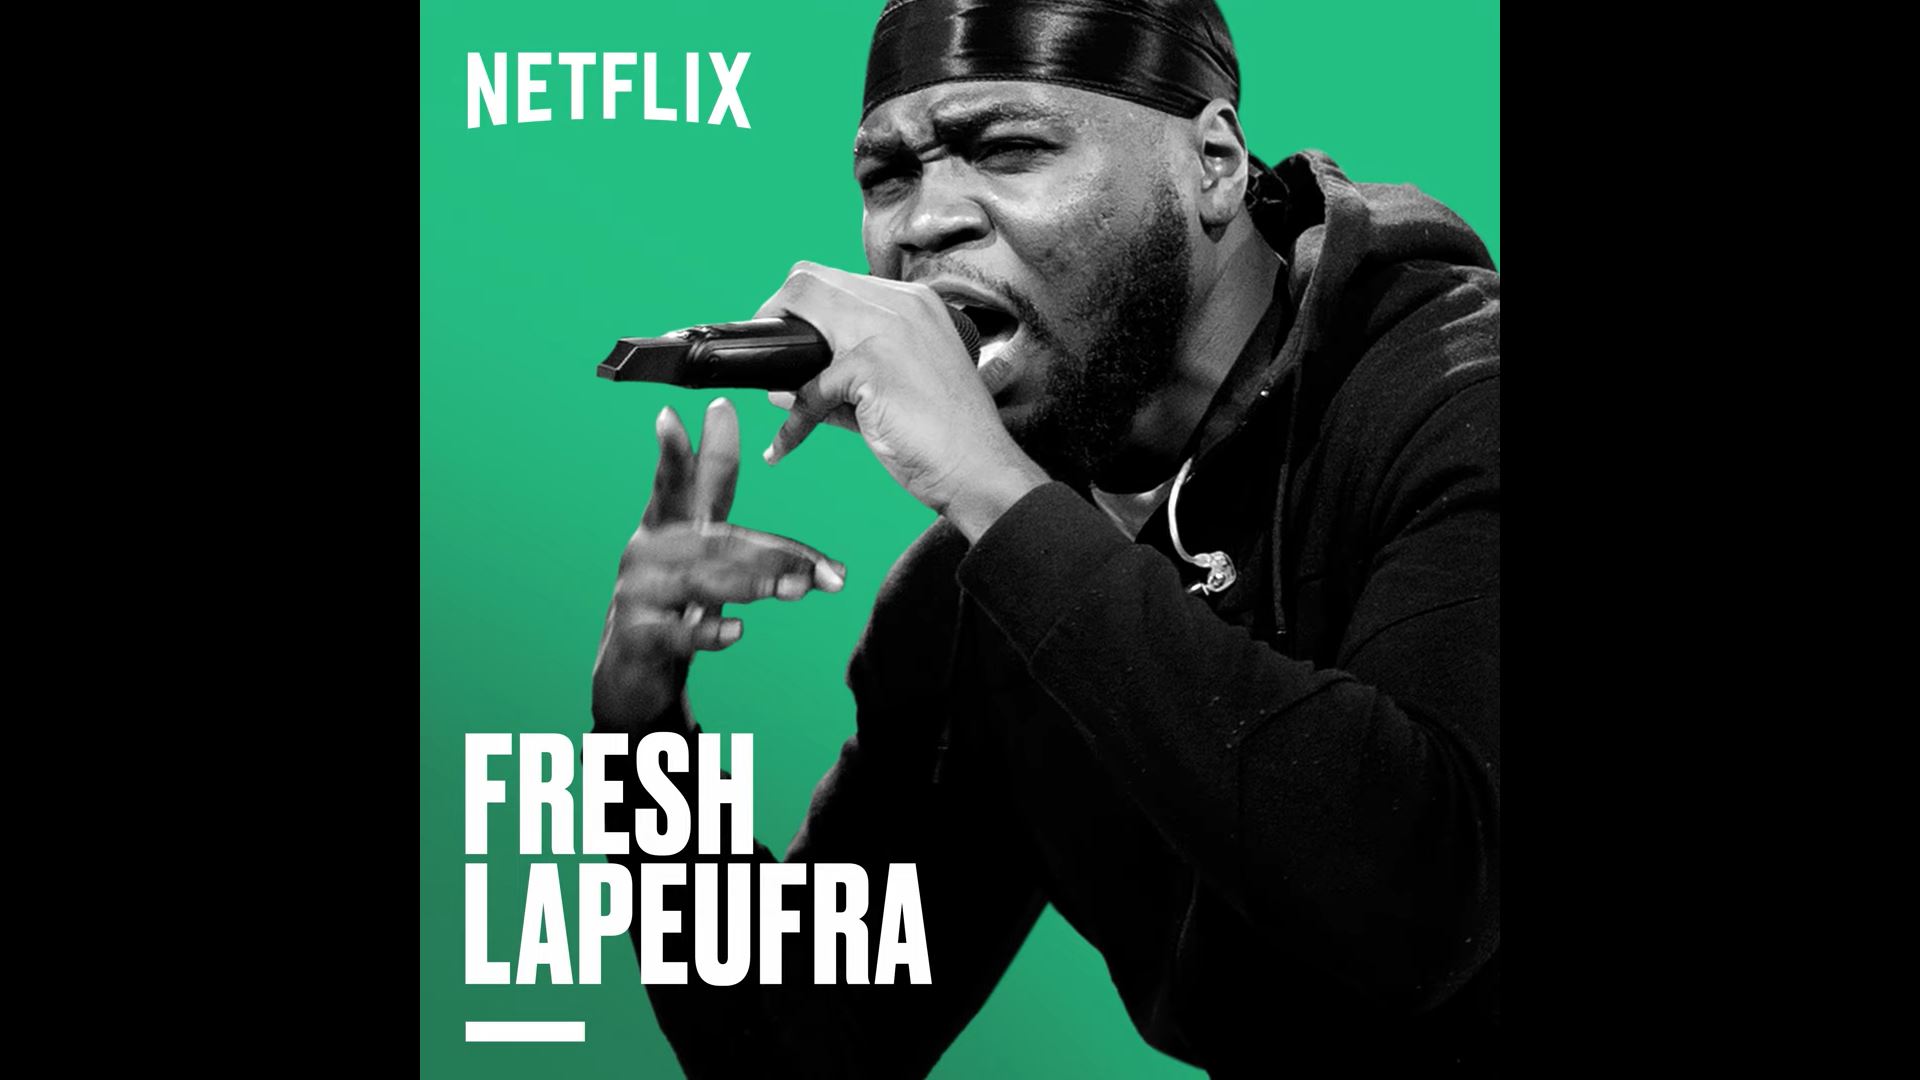 Nouvelle école - Netflix - shay - niska - sch - rap français -